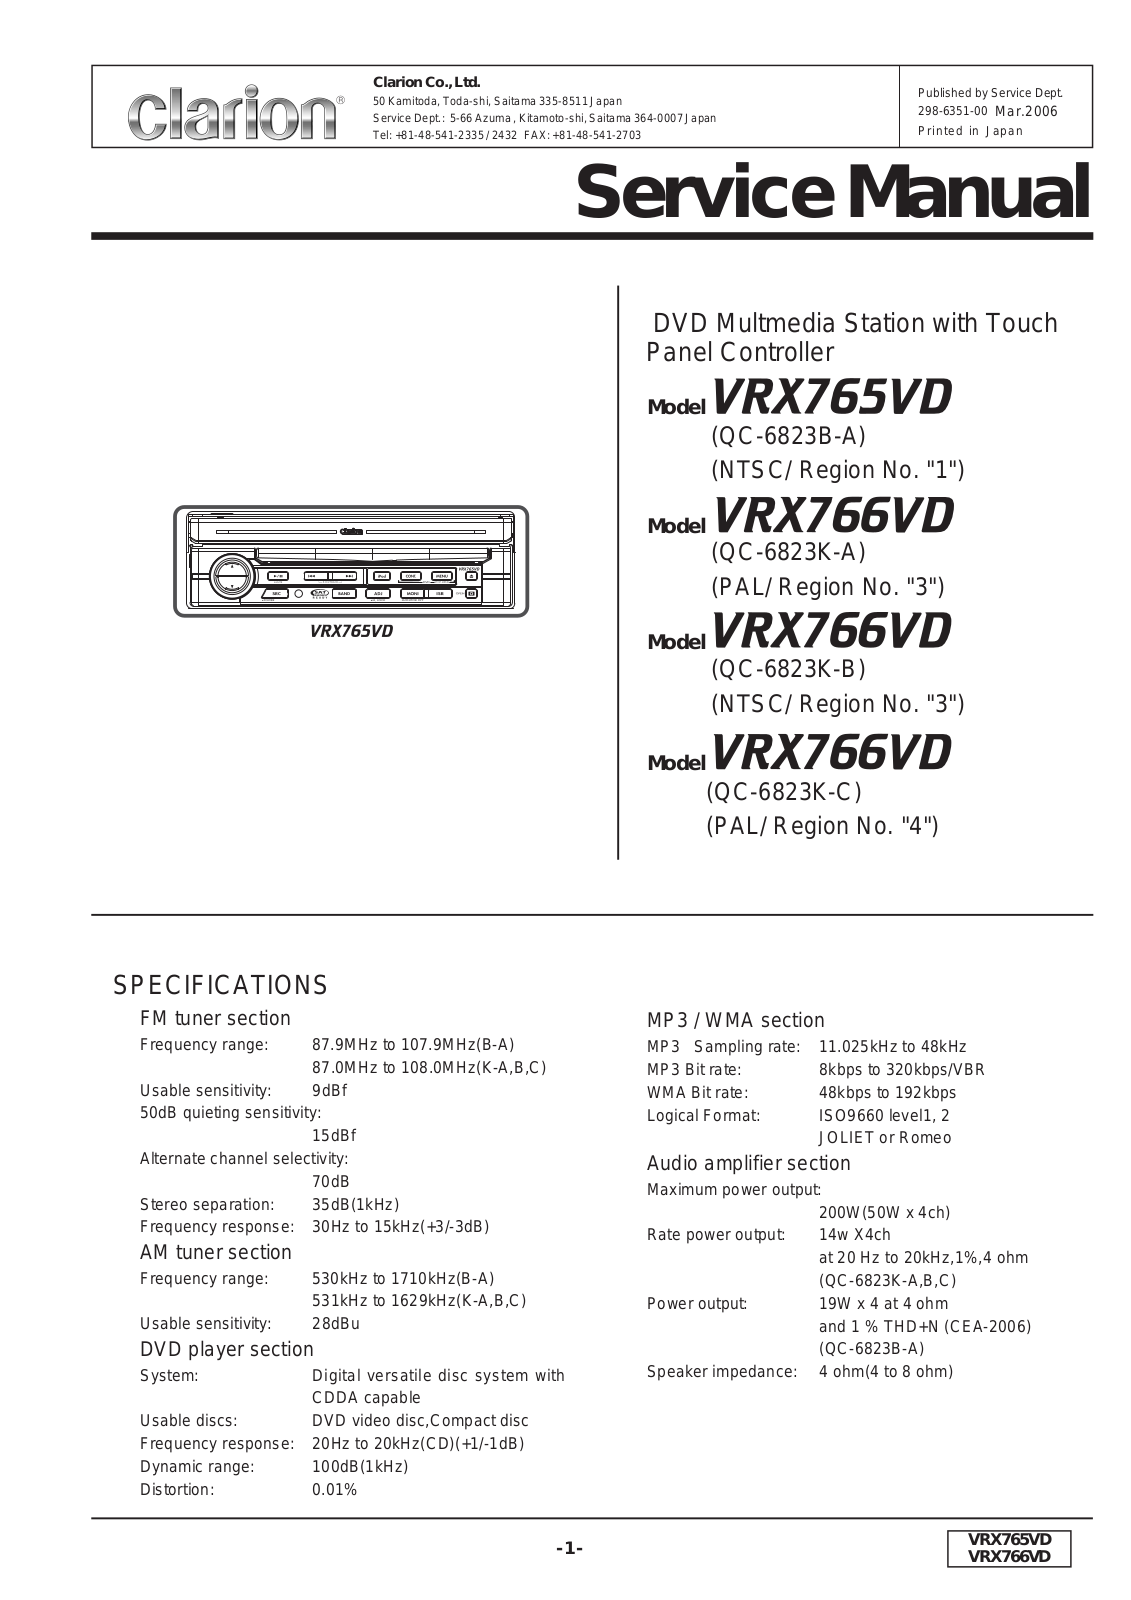 Clarion VRX765VD, VRX766VD Service Manual